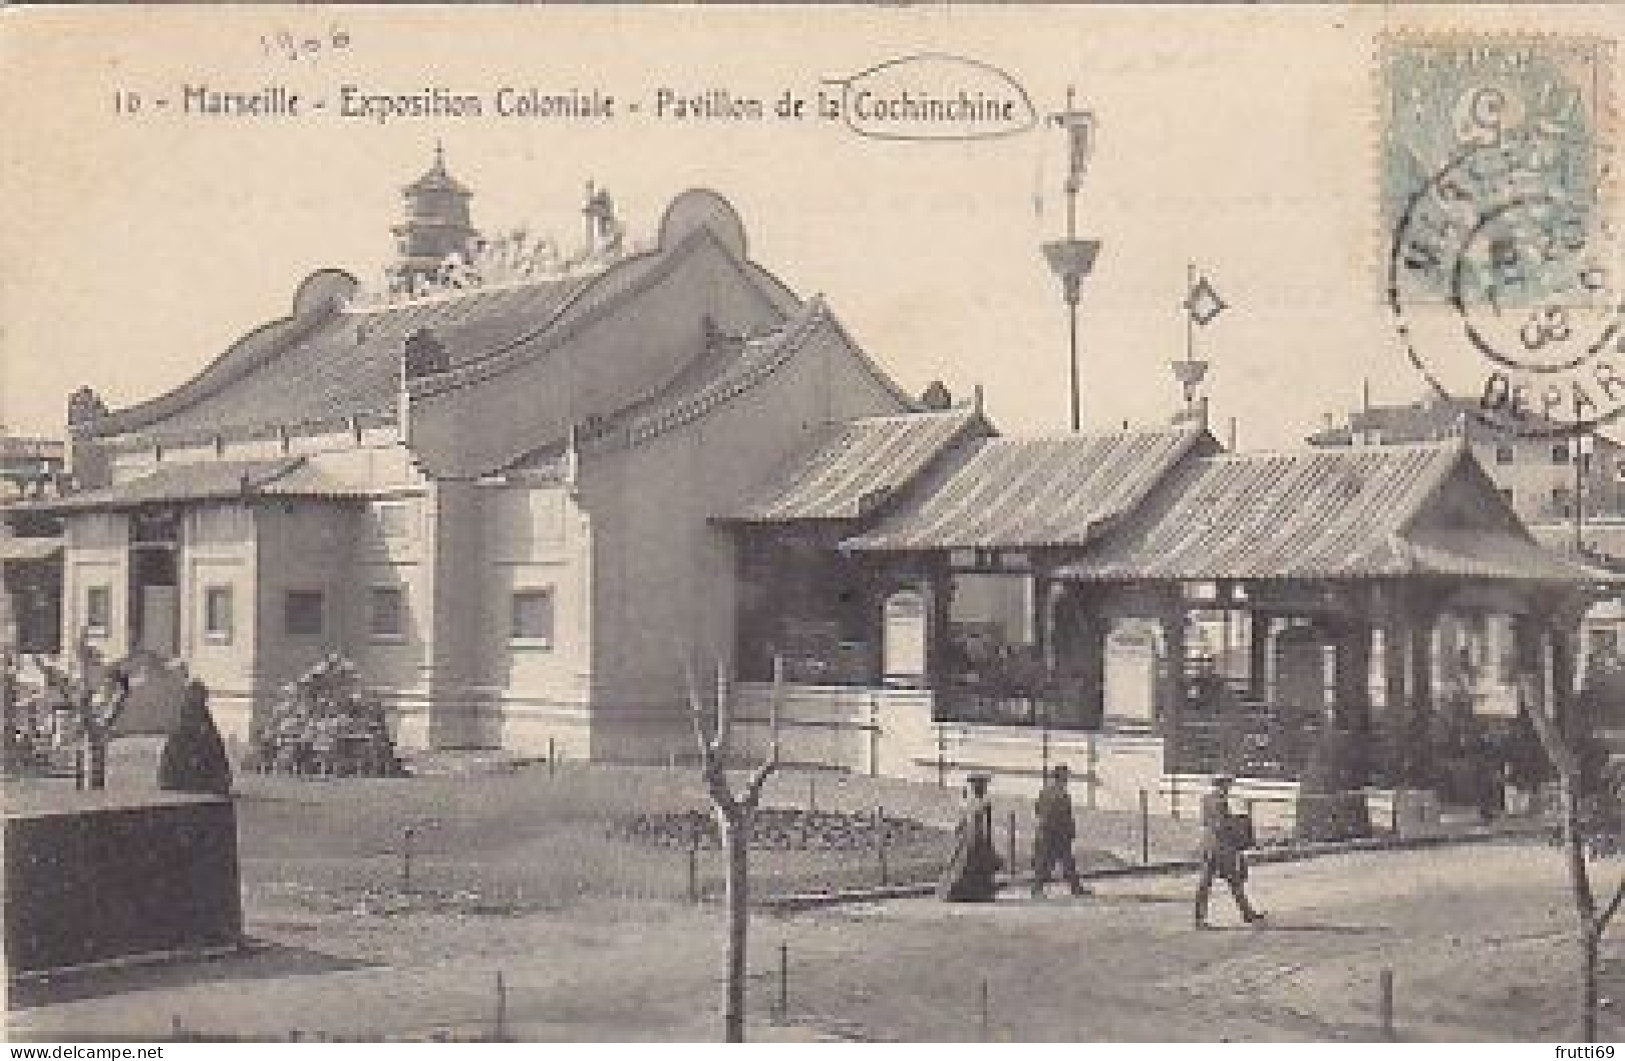 AK 216699 FRANCE - Marseille - Expoition Coloniale - Pavilion De Ls Cochinchine - Koloniale Tentoonstelling 1906-1922